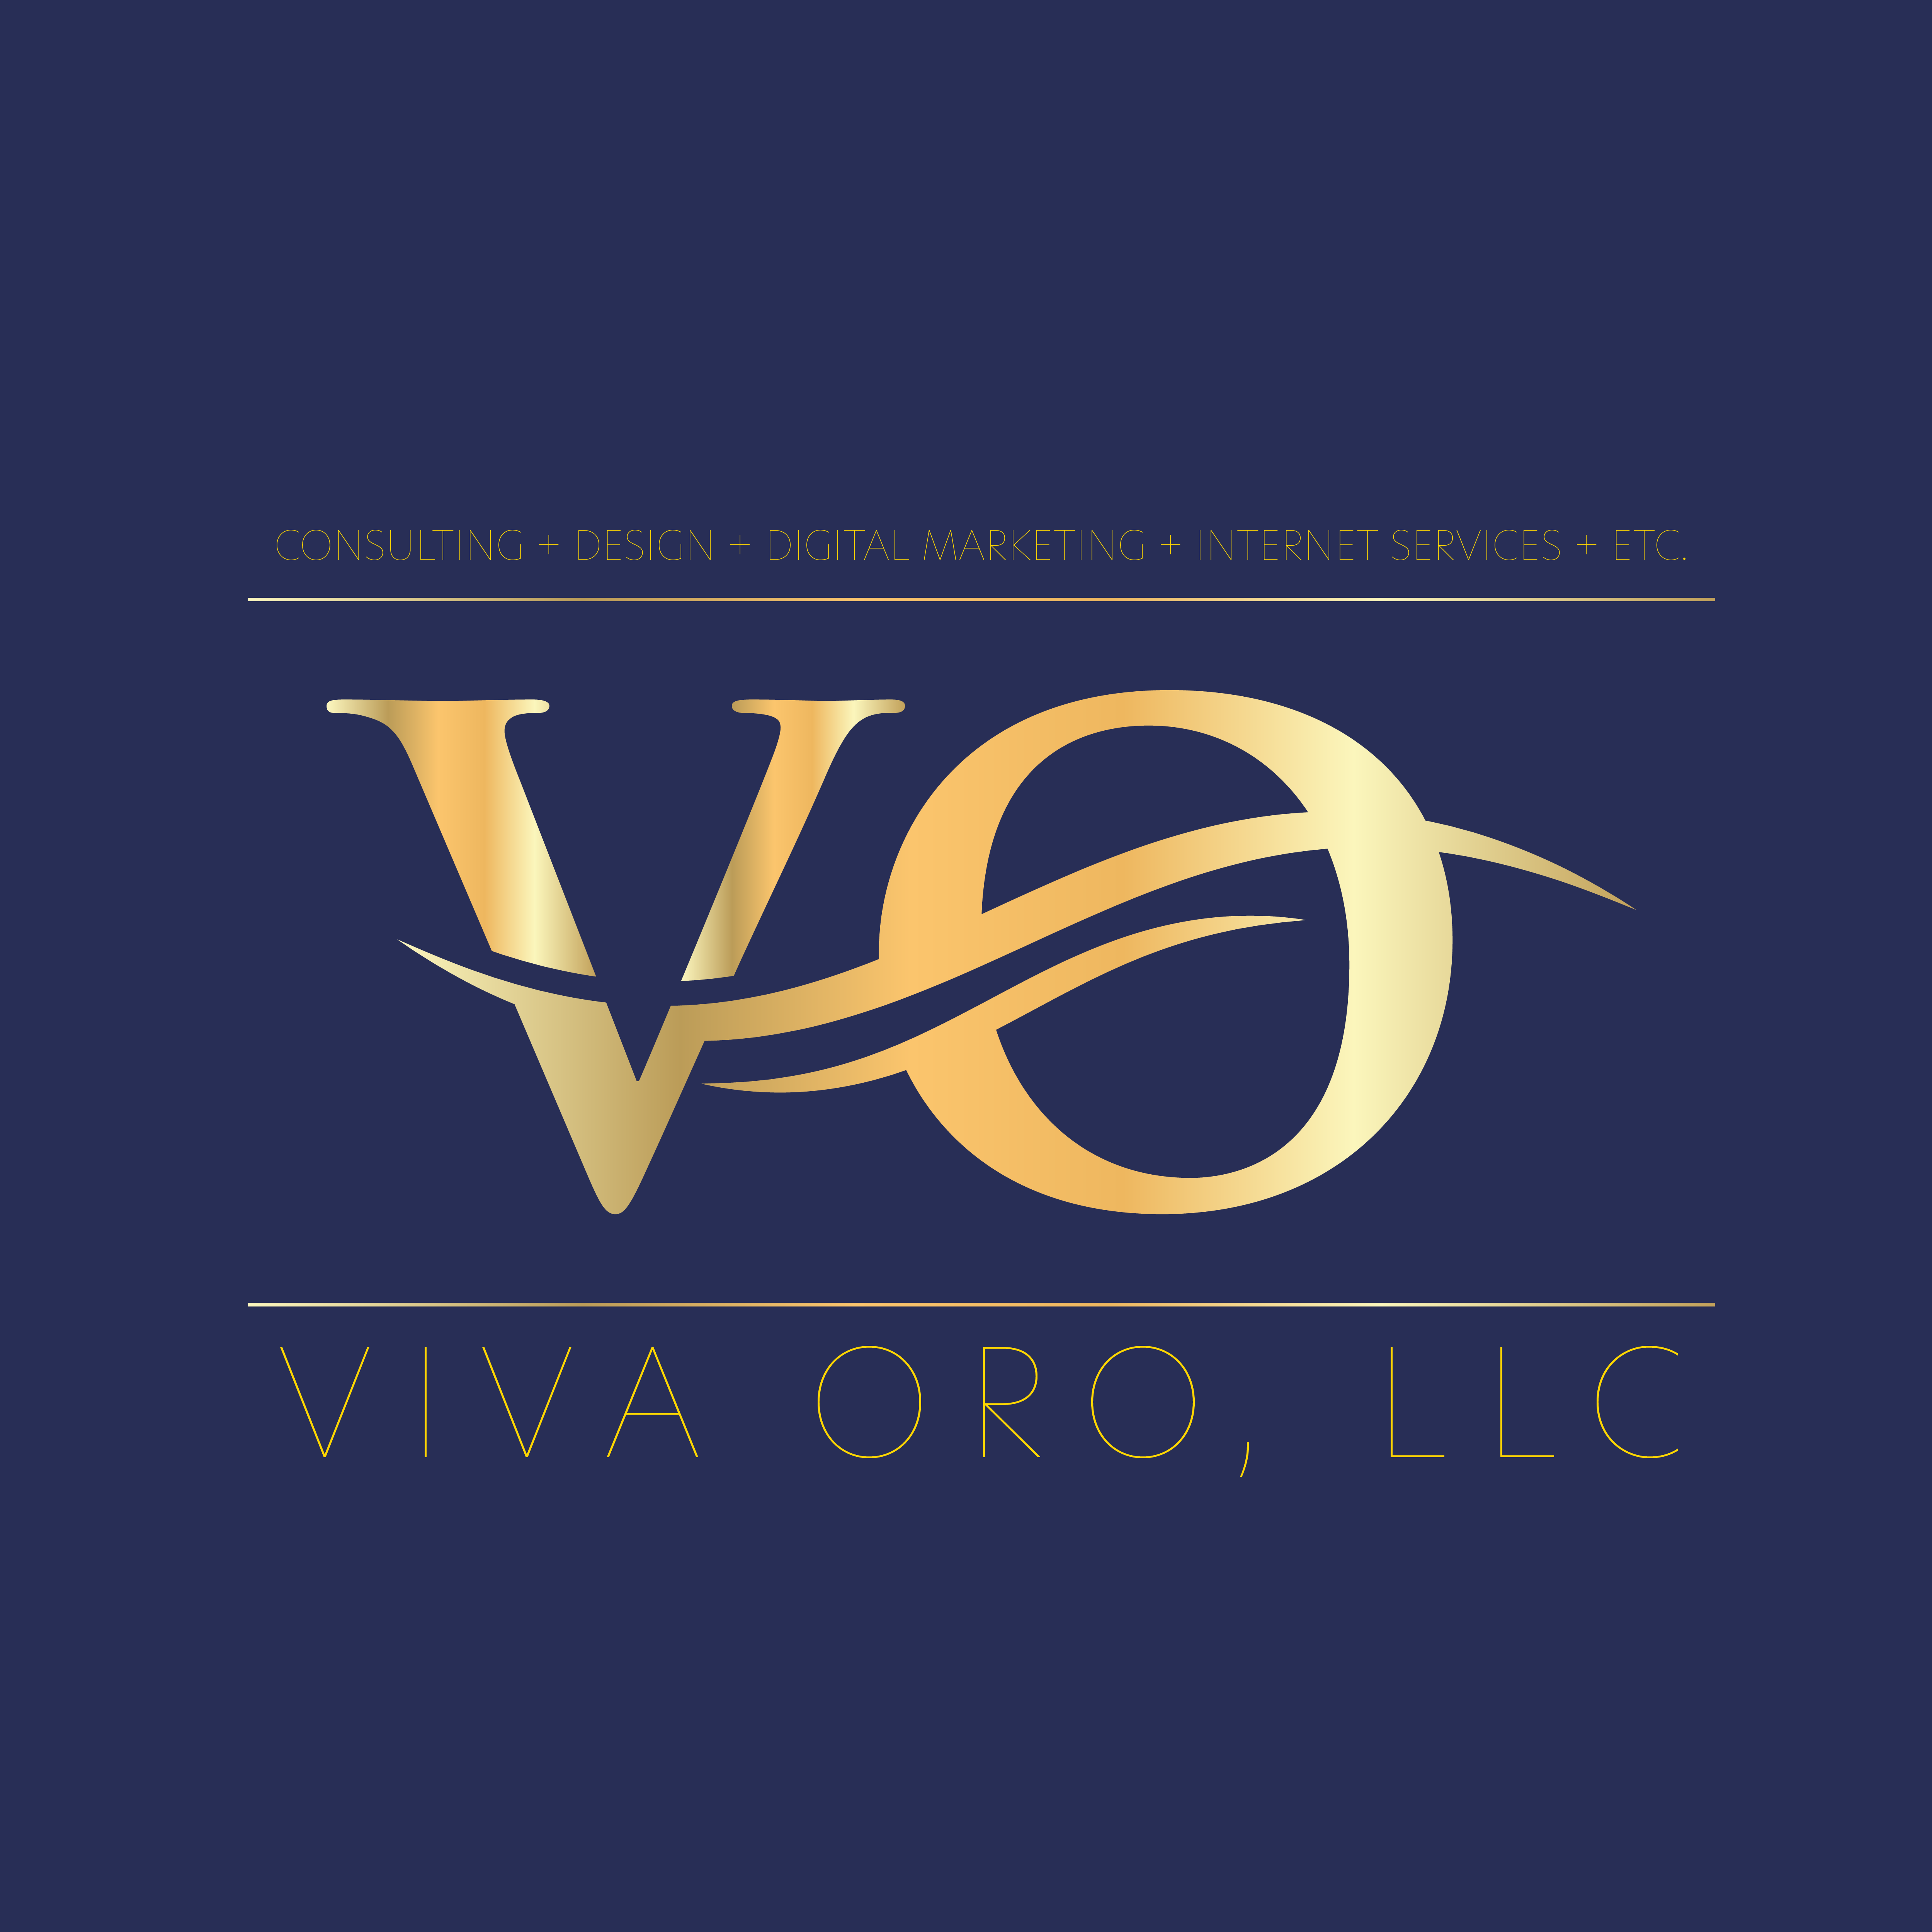 VIVA ORO, LLC